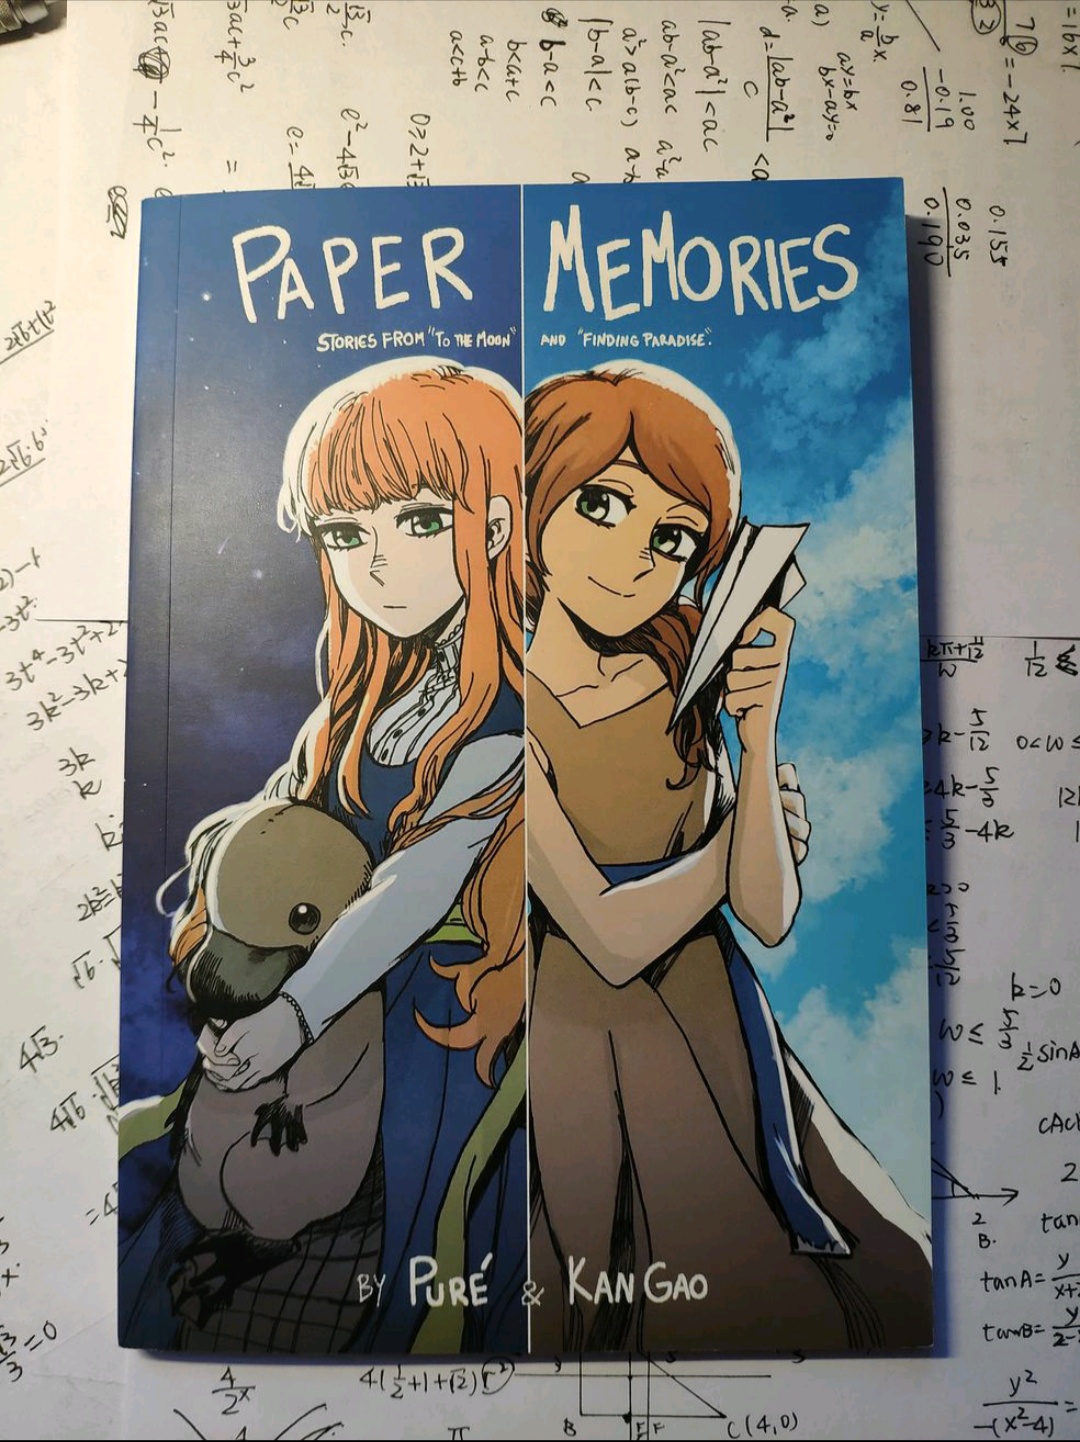 去月球官方漫畫書「Paper Memories」實體版已發佈 - 第1張